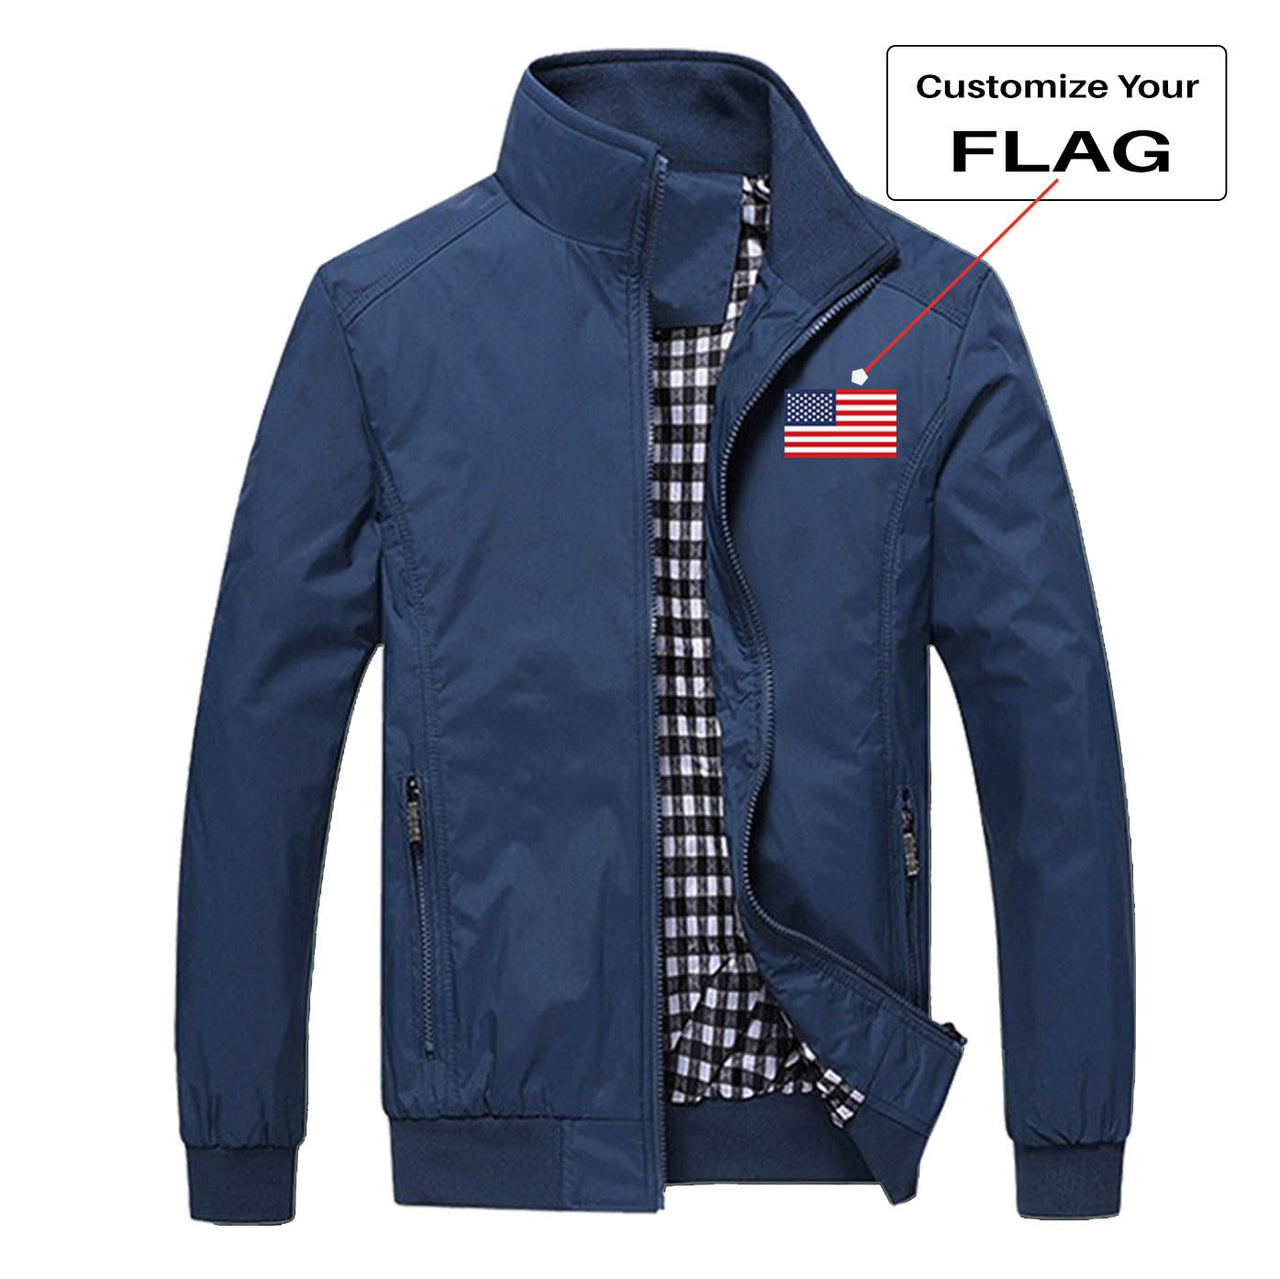 Custom FLAG Designed Stylish Jackets